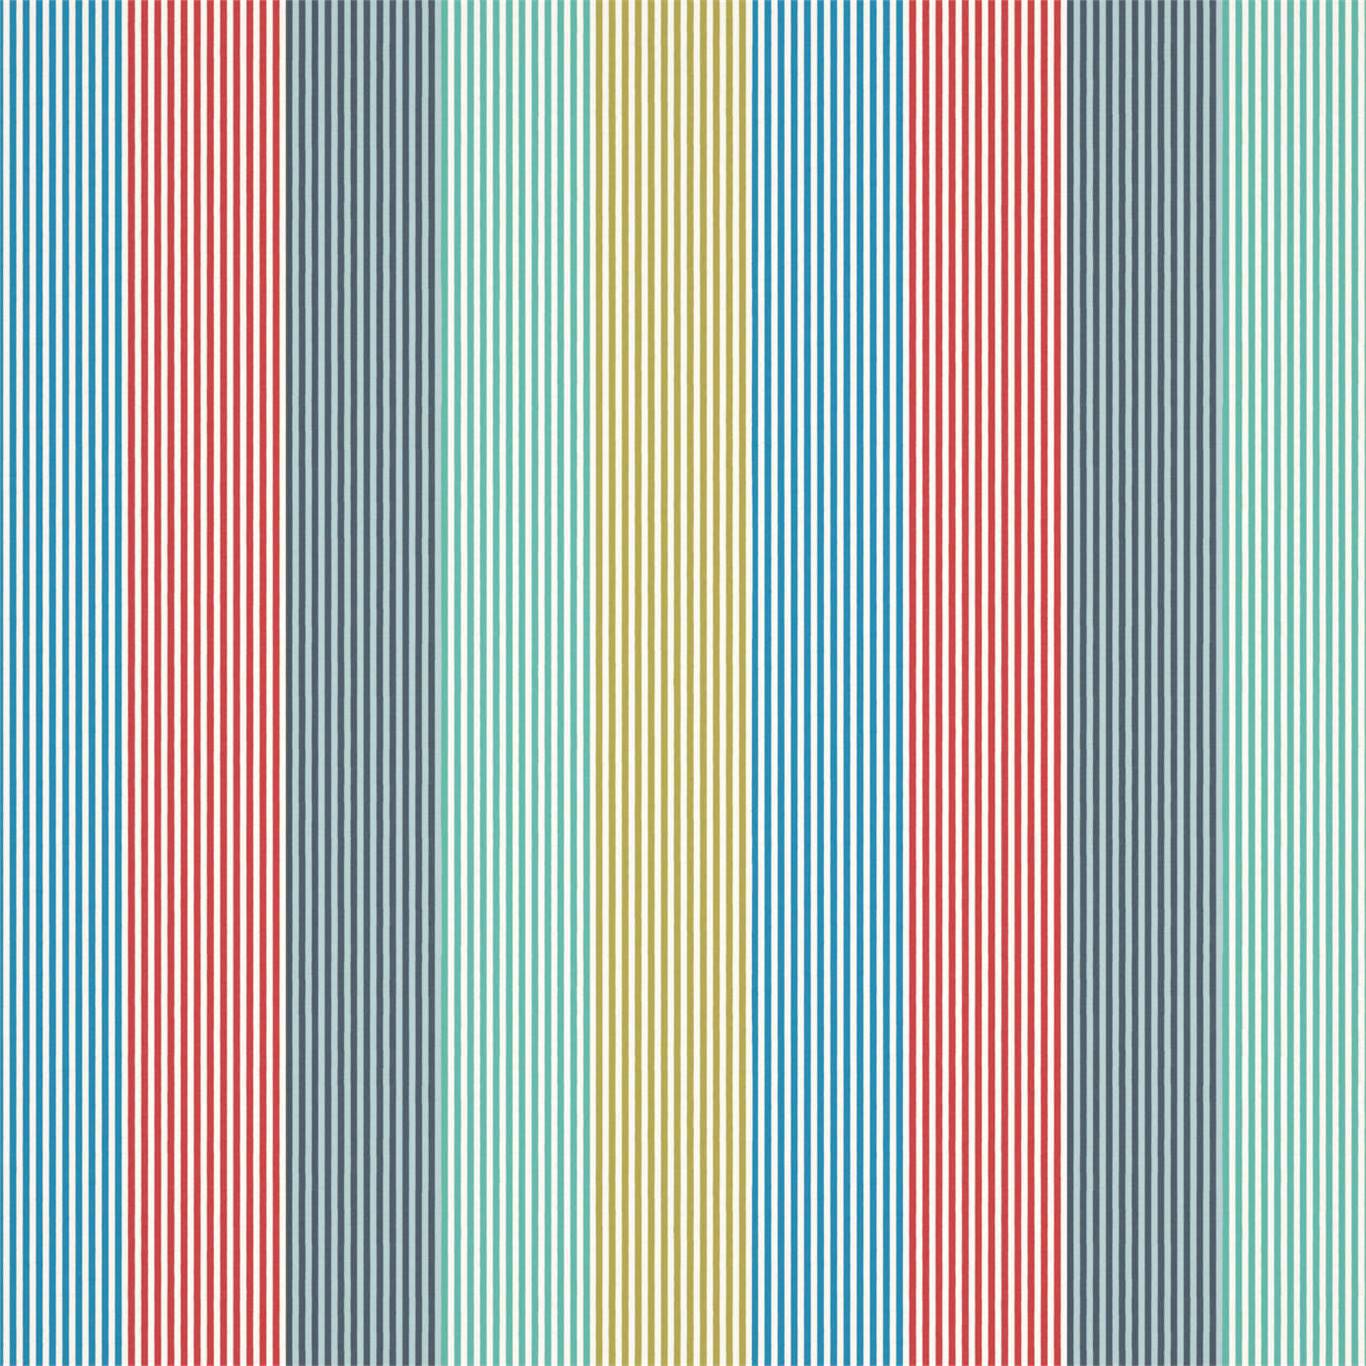 Funfair Stripe Ink/Aqua/Kiwi/Marine/Poppy Fabric by HAR